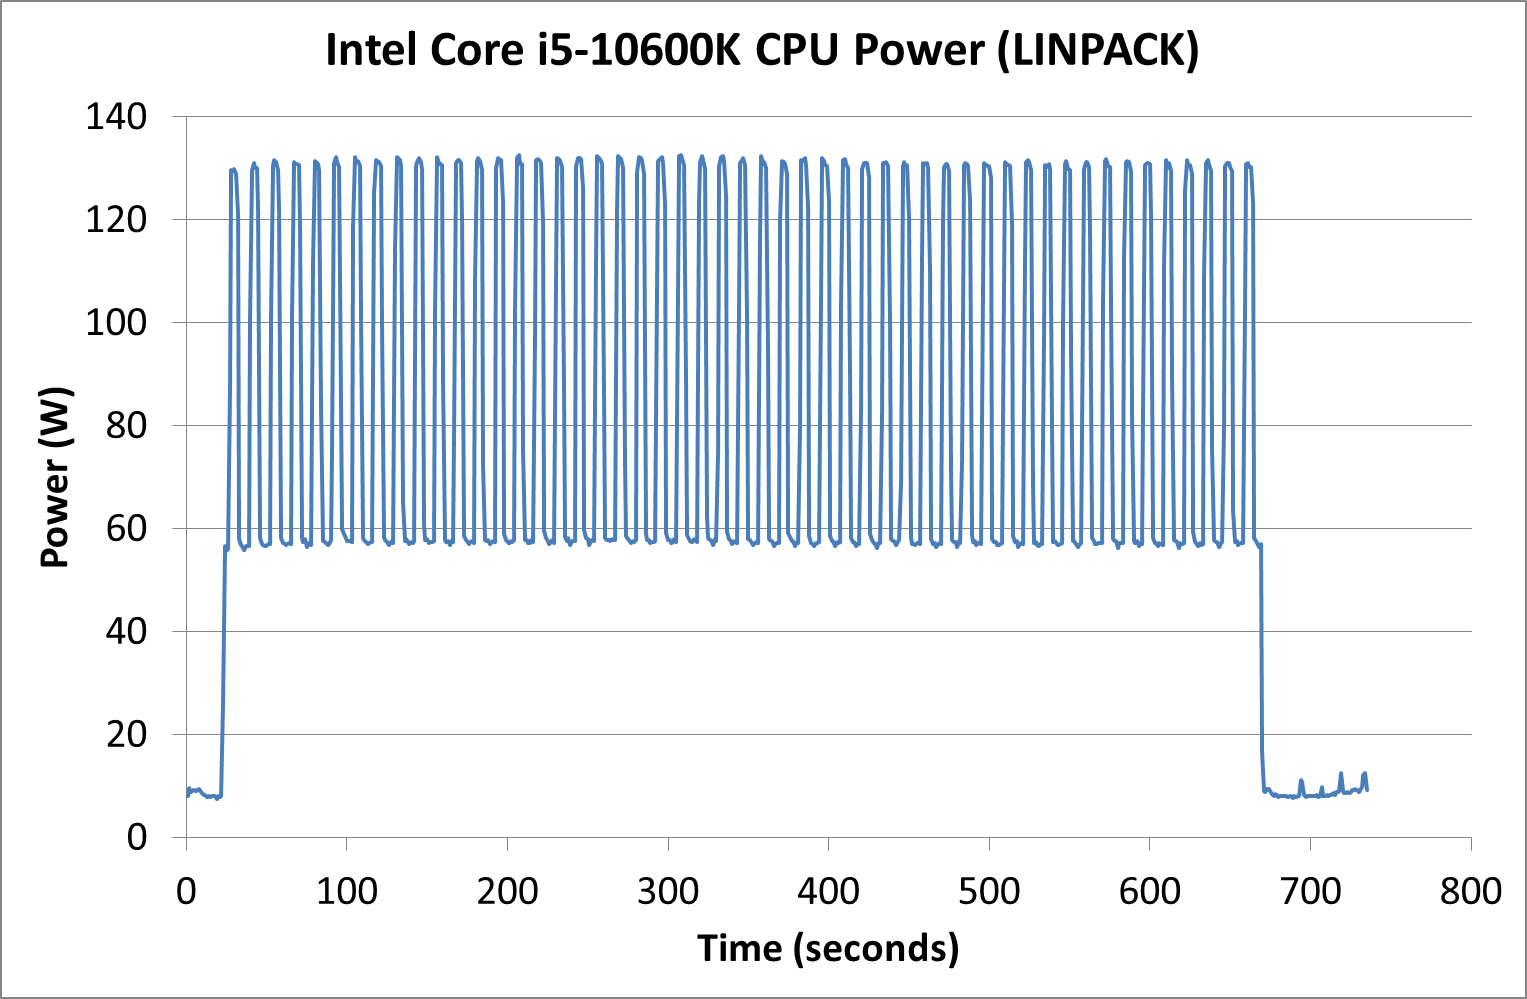 The Intel Comet Lake Core i9-10900K, i7-10700K, i5-10600K CPU Review:  Skylake We Go Again